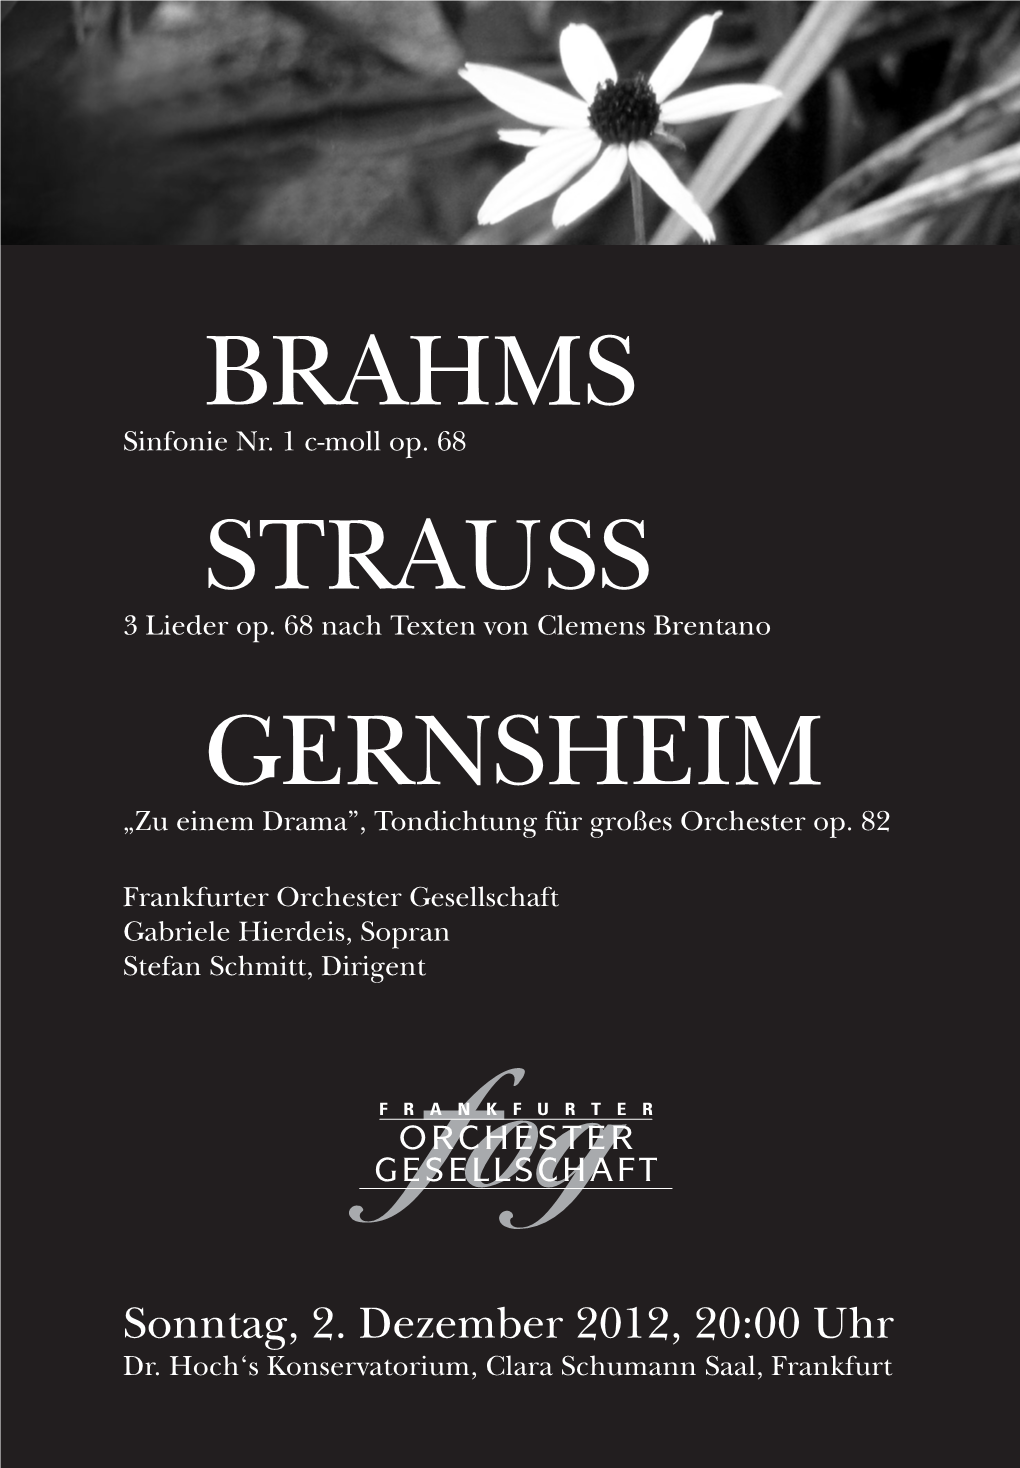 Brahms Strauss Gernsheim